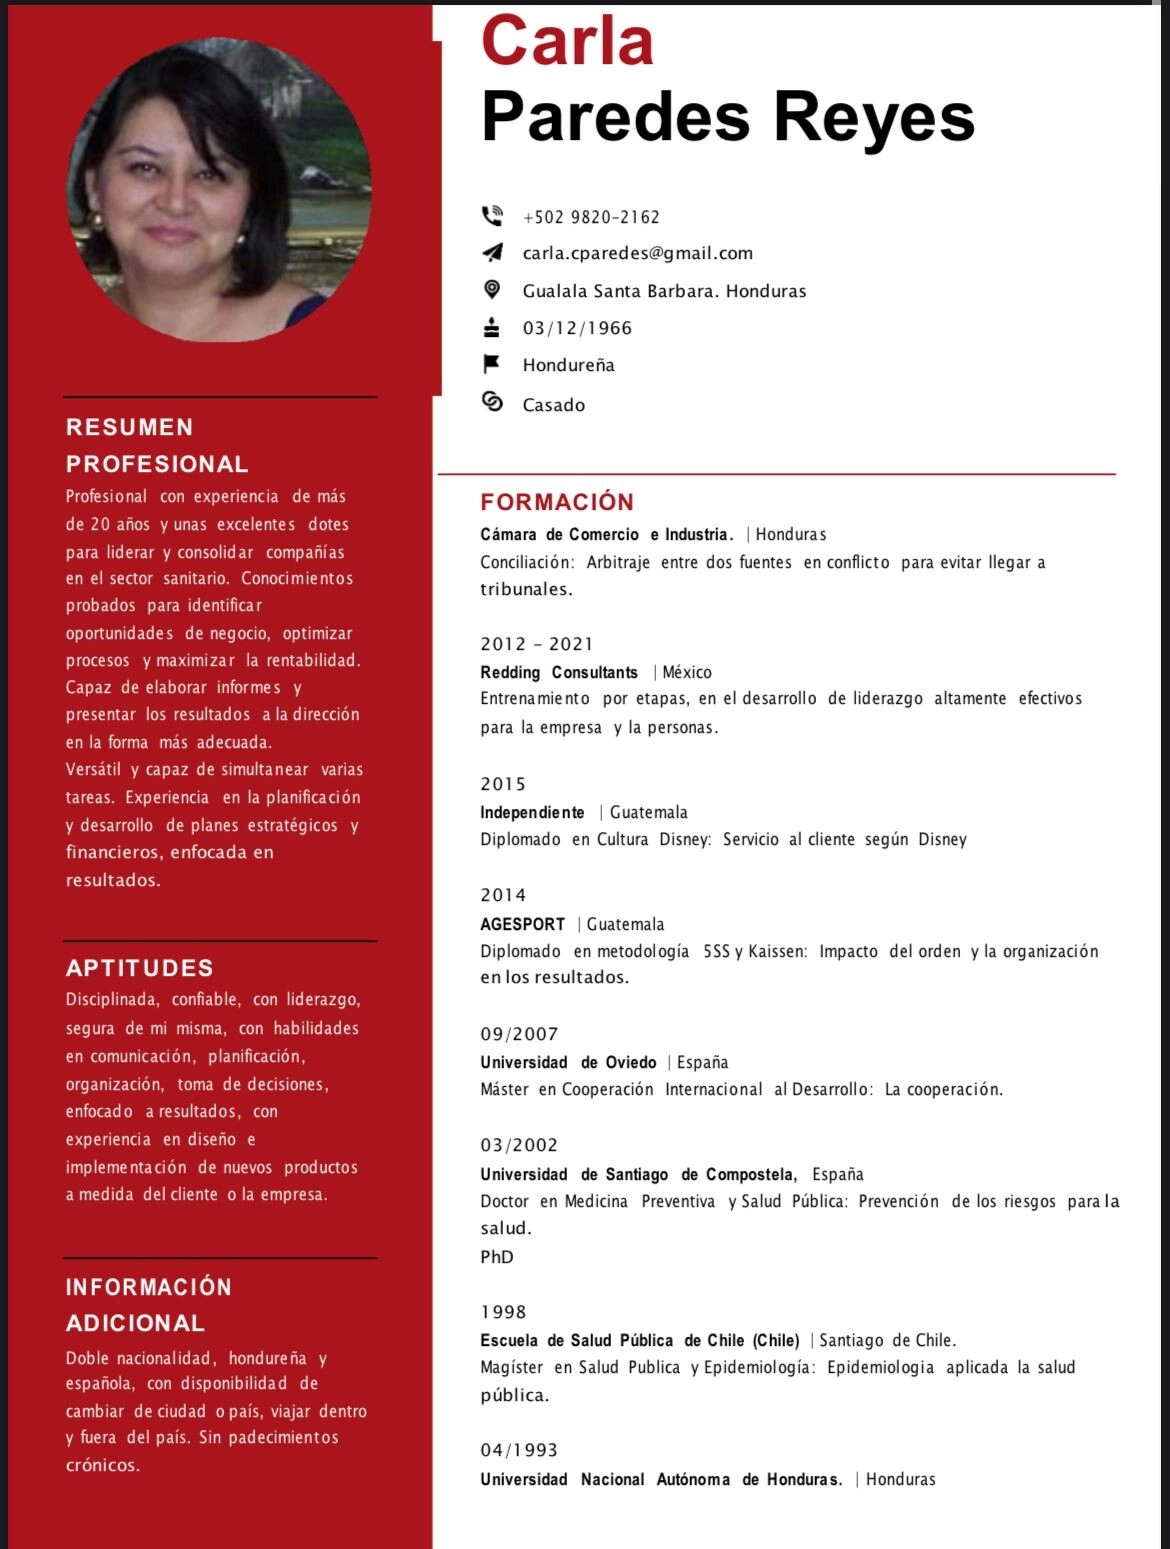 Conozca El Curriculum De La Dra. Carla Paredes Reyes, Nombrada Como Nueva Ministra De Salud, Por La Presidenta Xiomara Castro 01